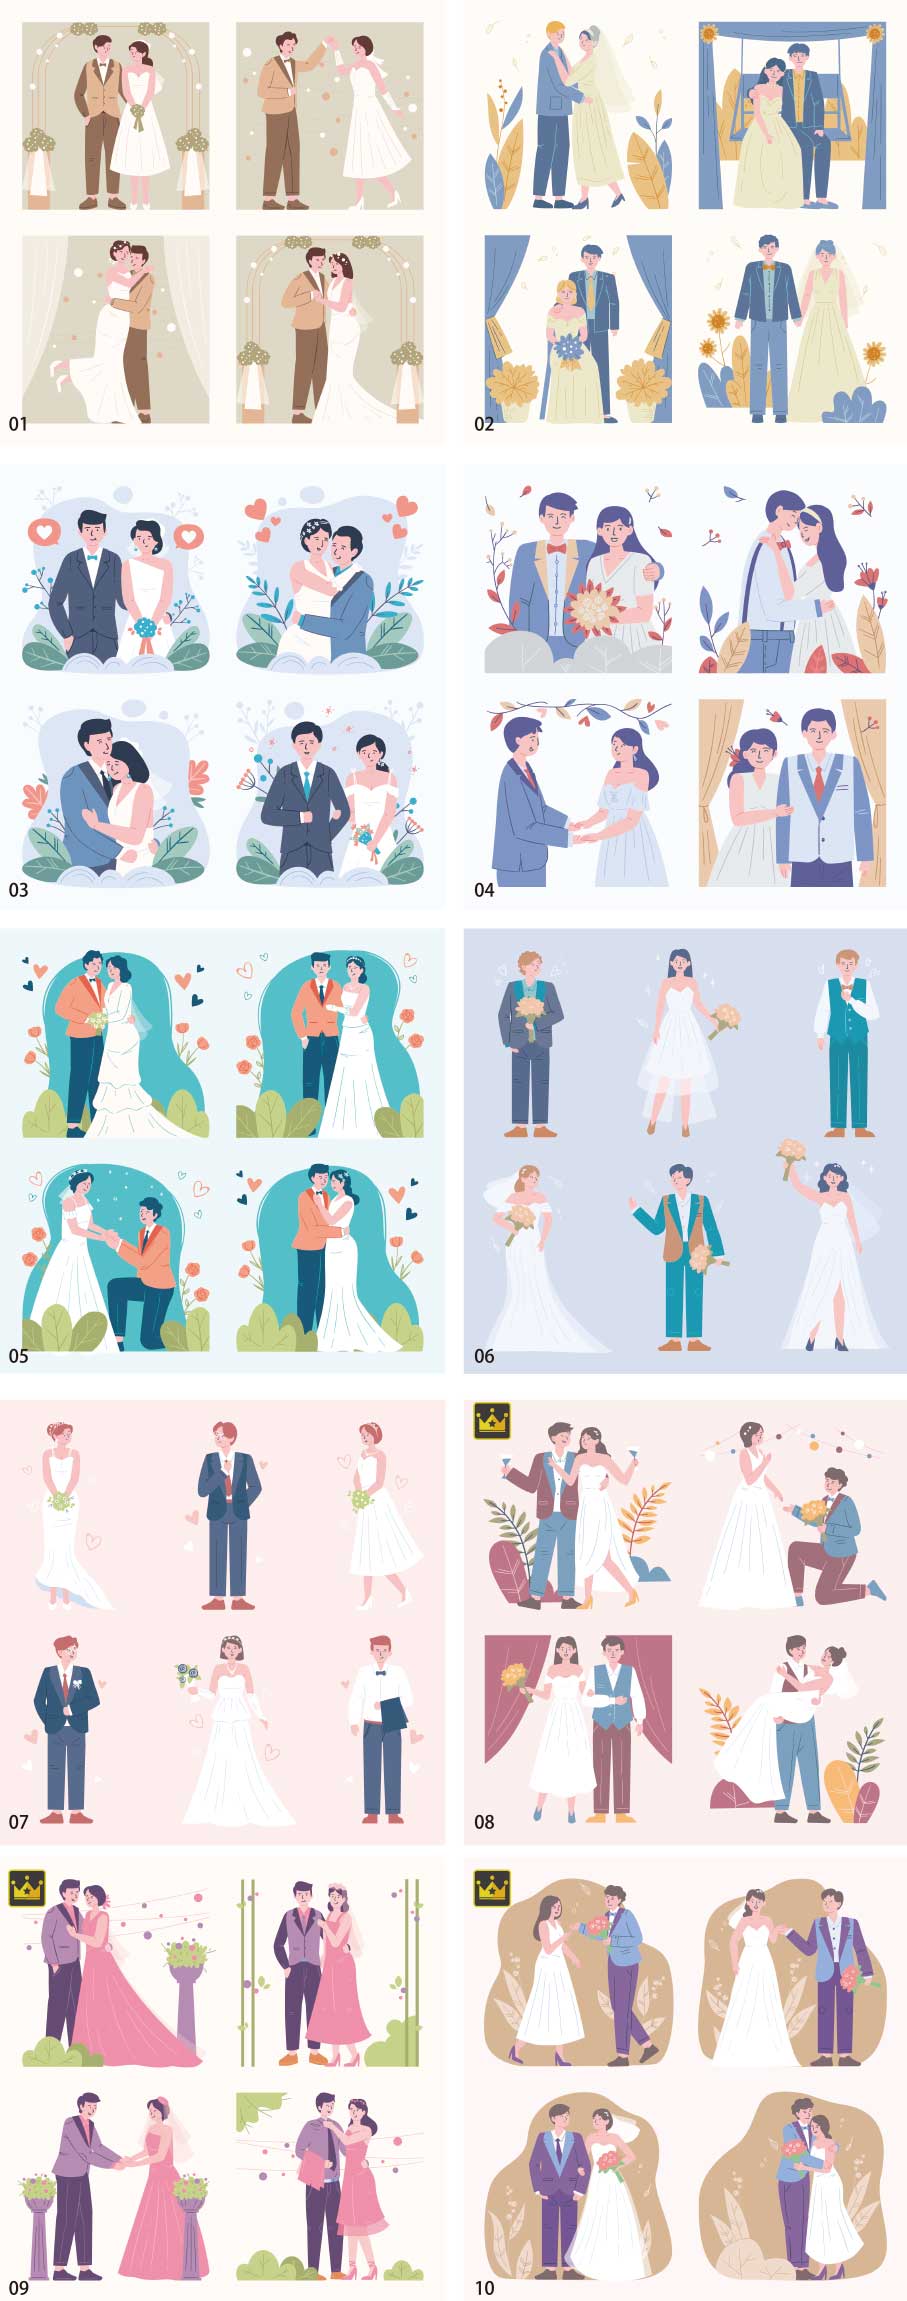 Bộ sưu tập minh họa đám cưới